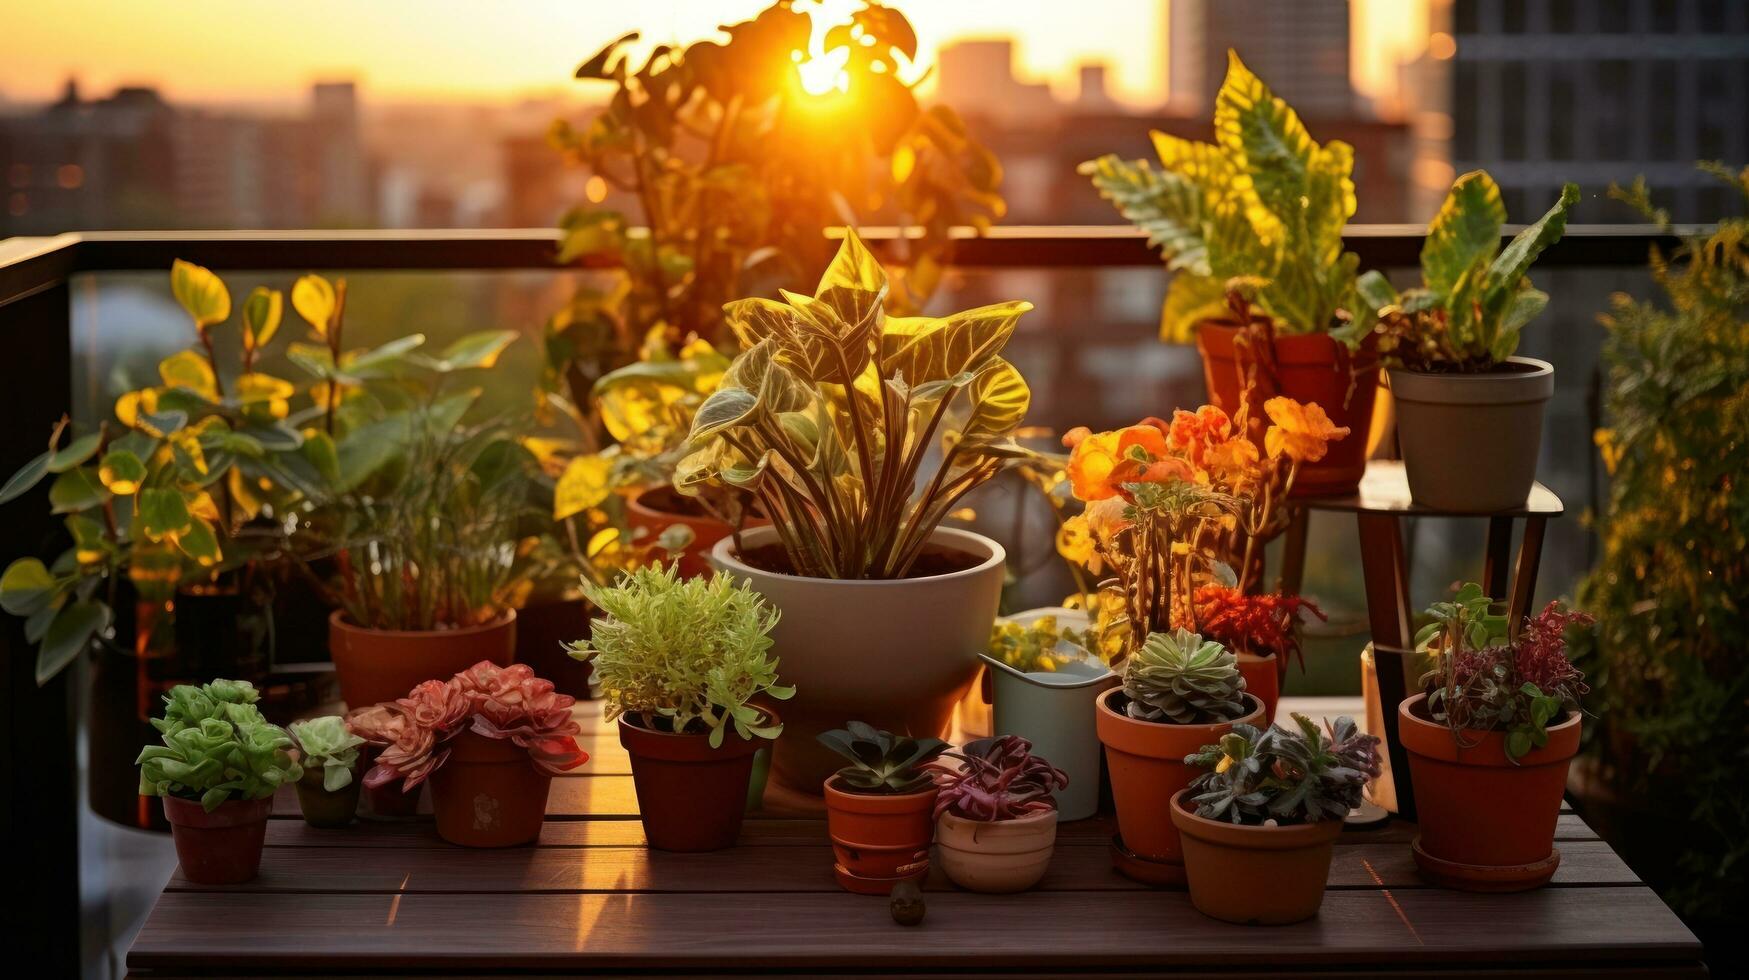 terraço com em vaso plantas e flores foto